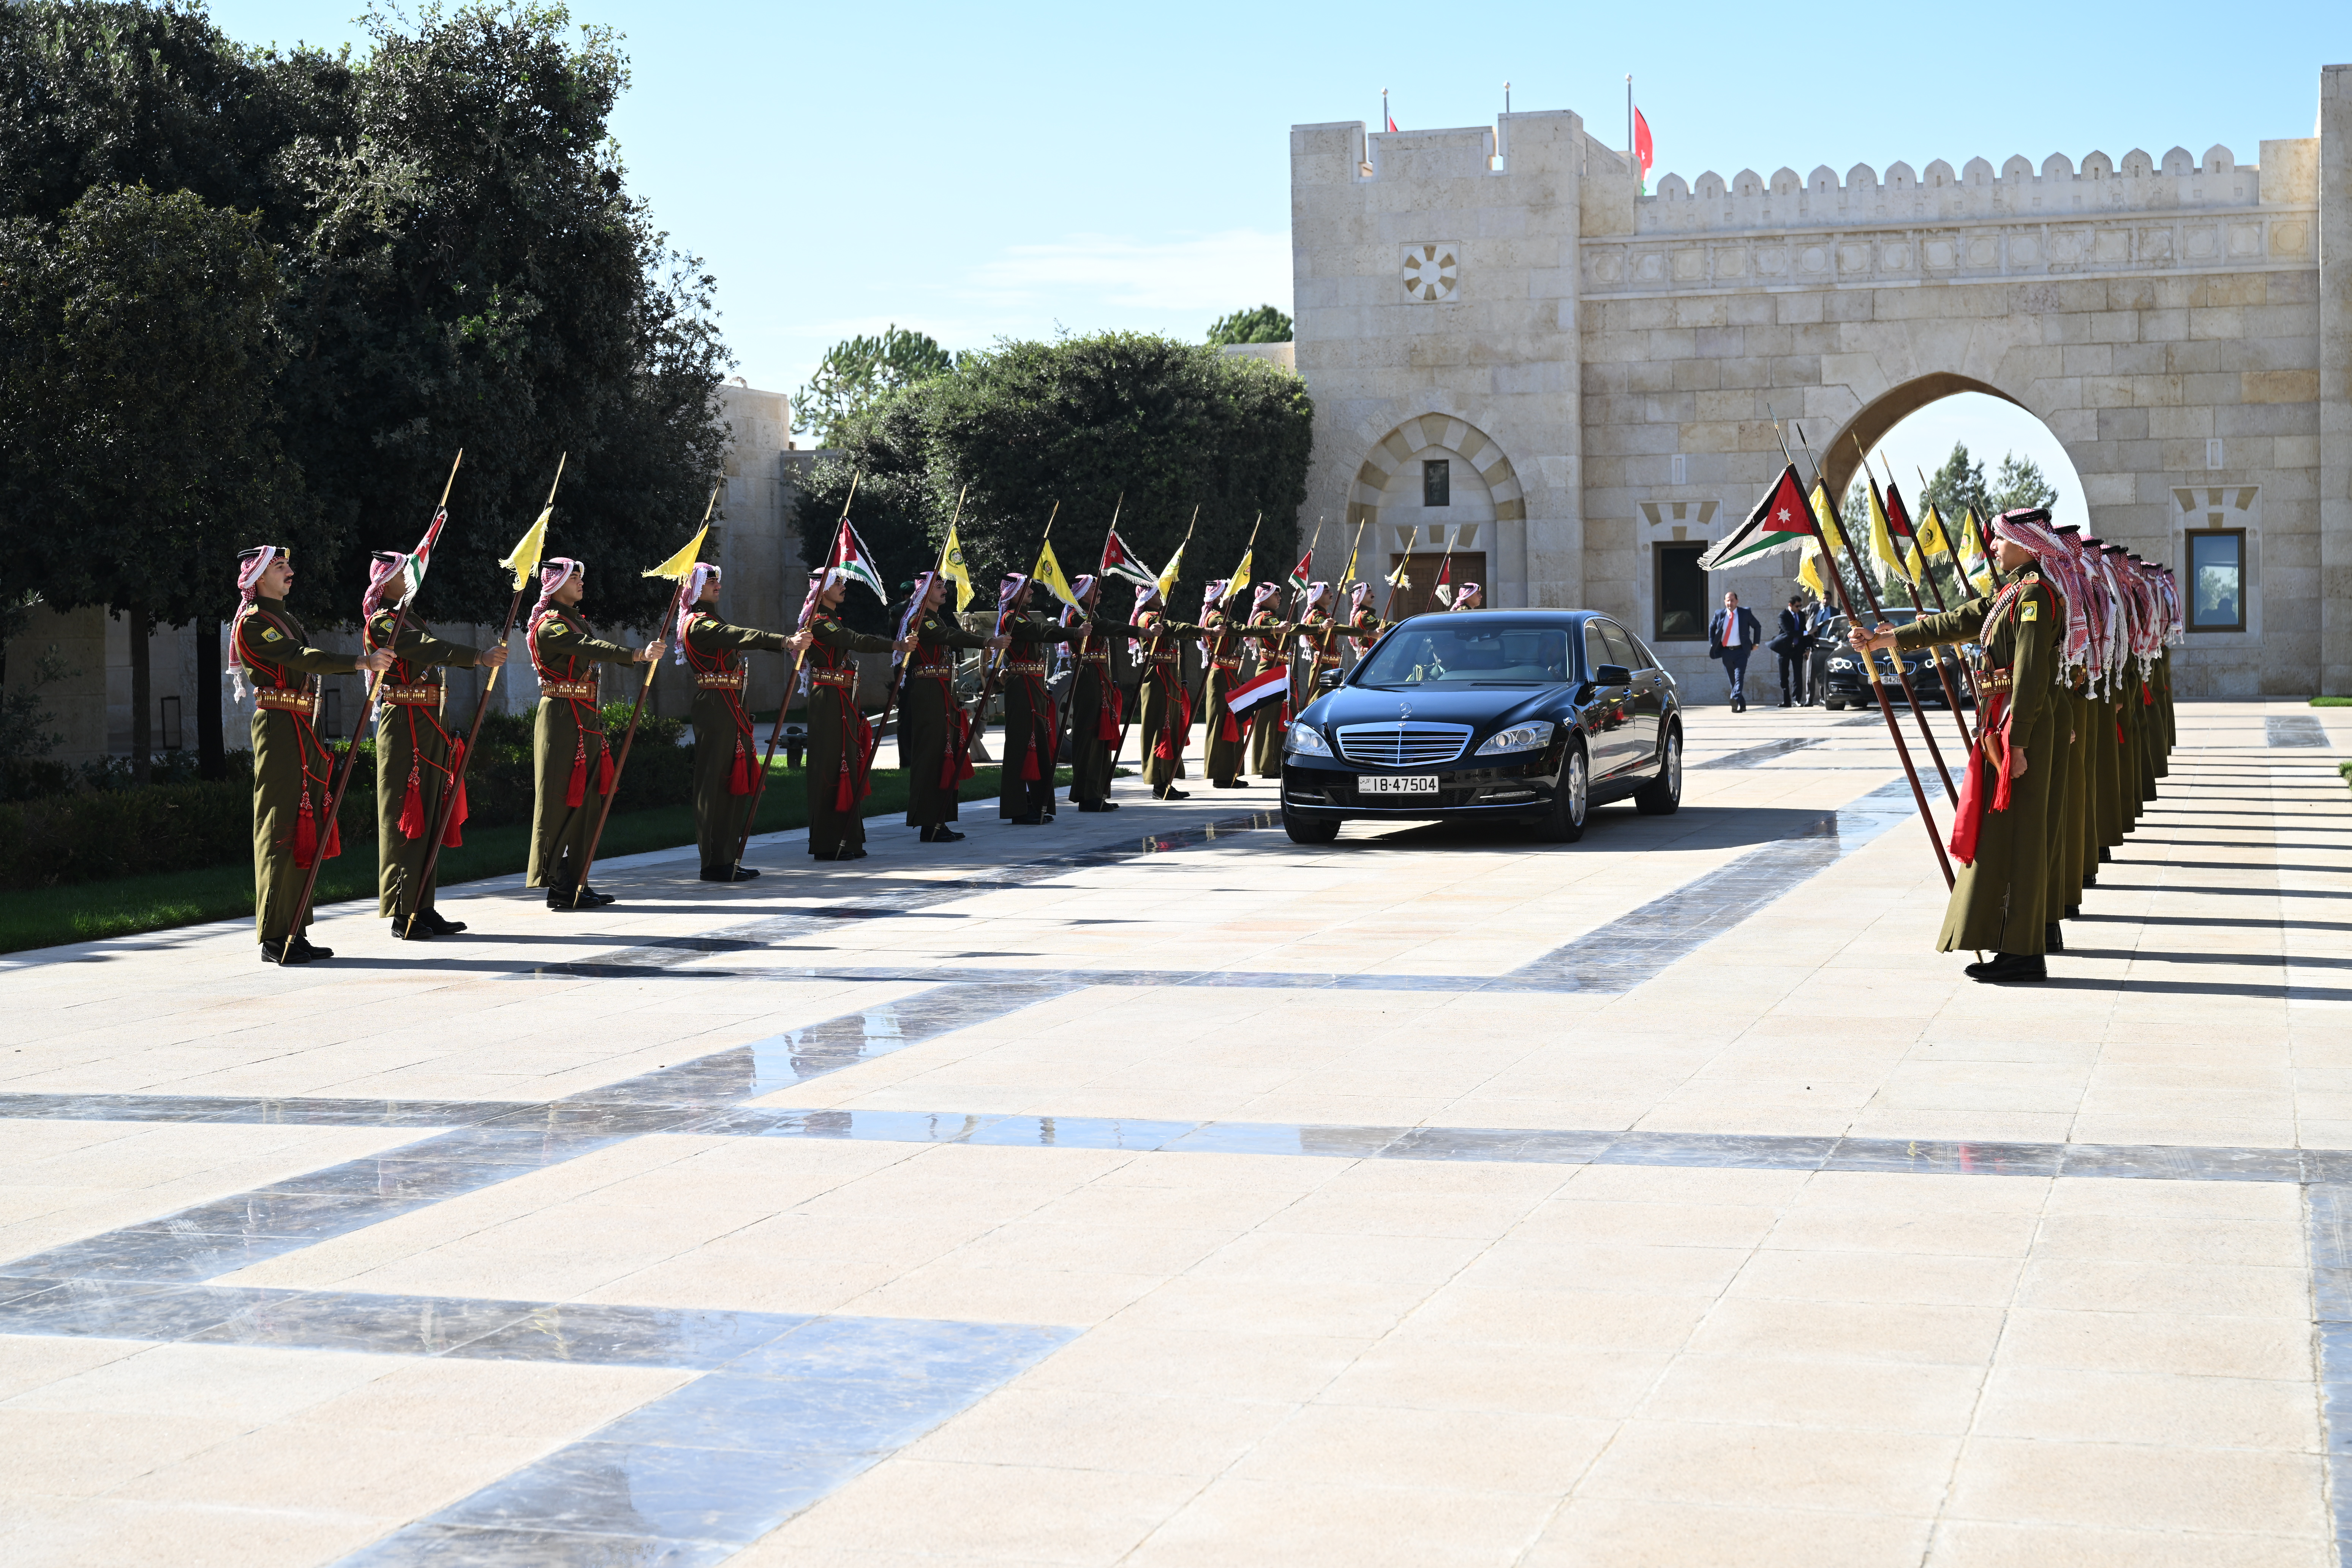 زيارة رئيس مجلس القيادة إلى الأردن ولقائه بالملك عبدالله الثاني 28 نوفمبر 2022